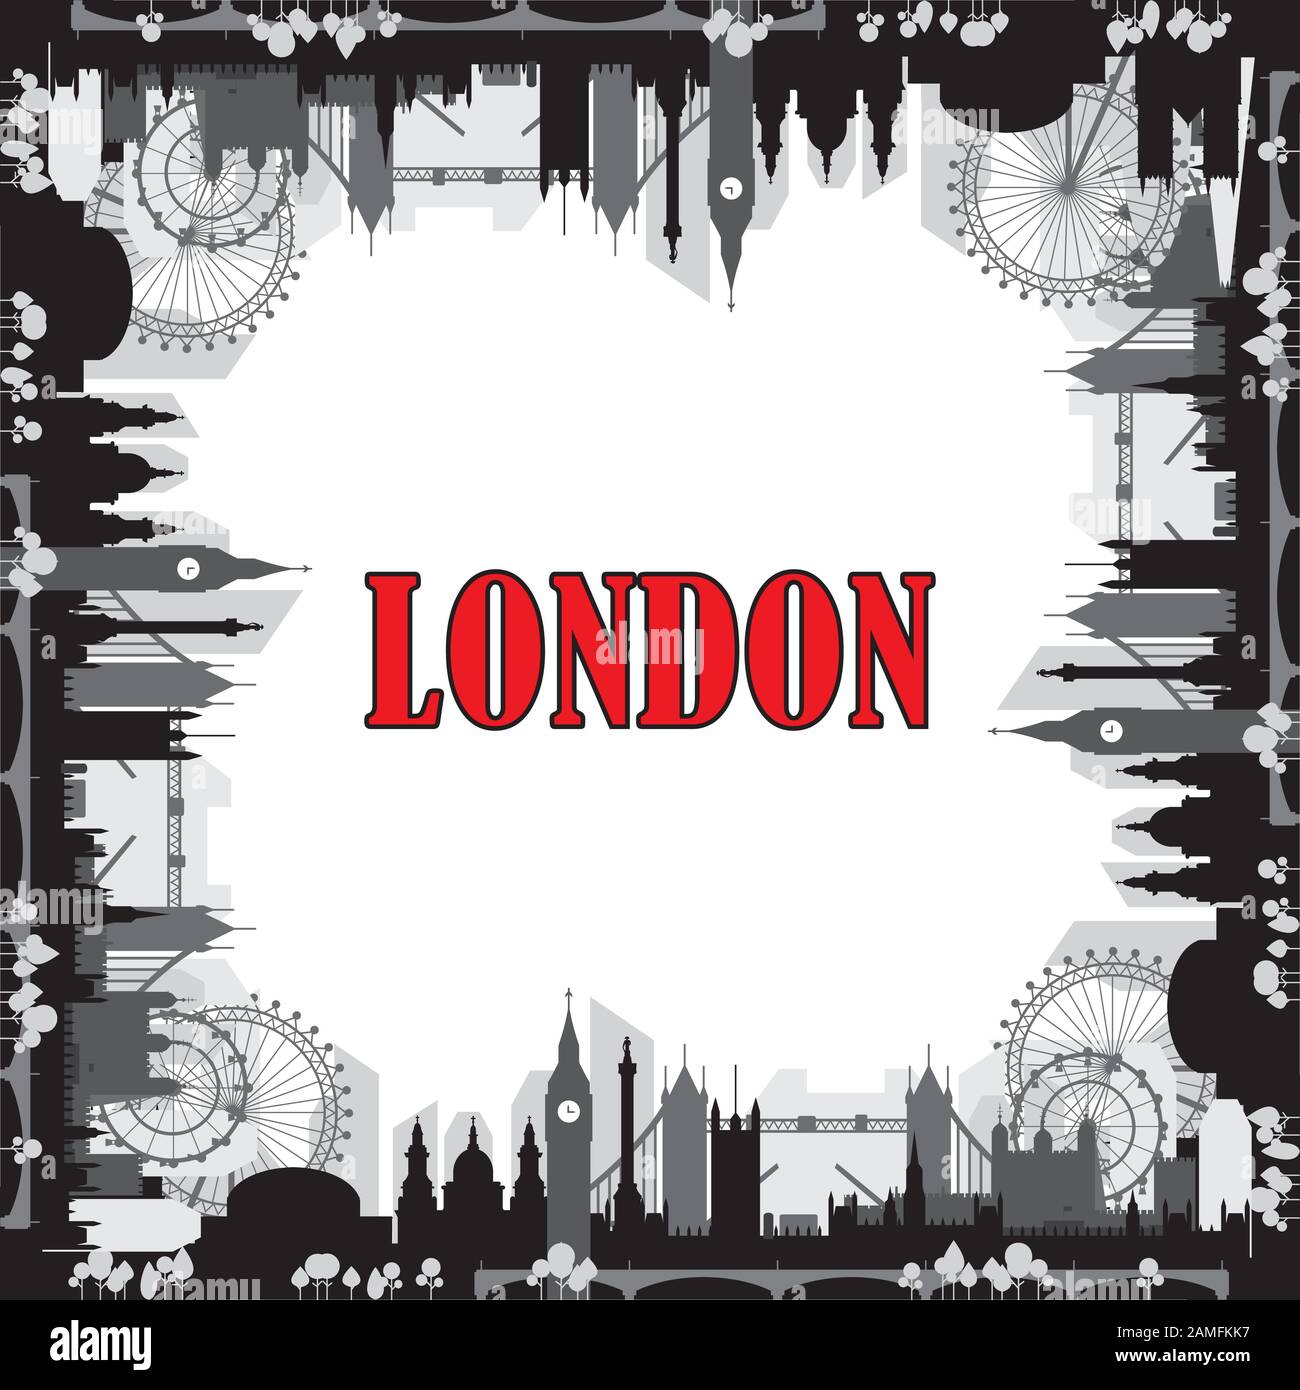 London City Skyline Silhouette Vector Square geschlossene Abbildung in schwarzen und grauen Farben isoliert auf weißem Hintergrund. Quadratische Vektor-Silhouette Illus Stock Vektor